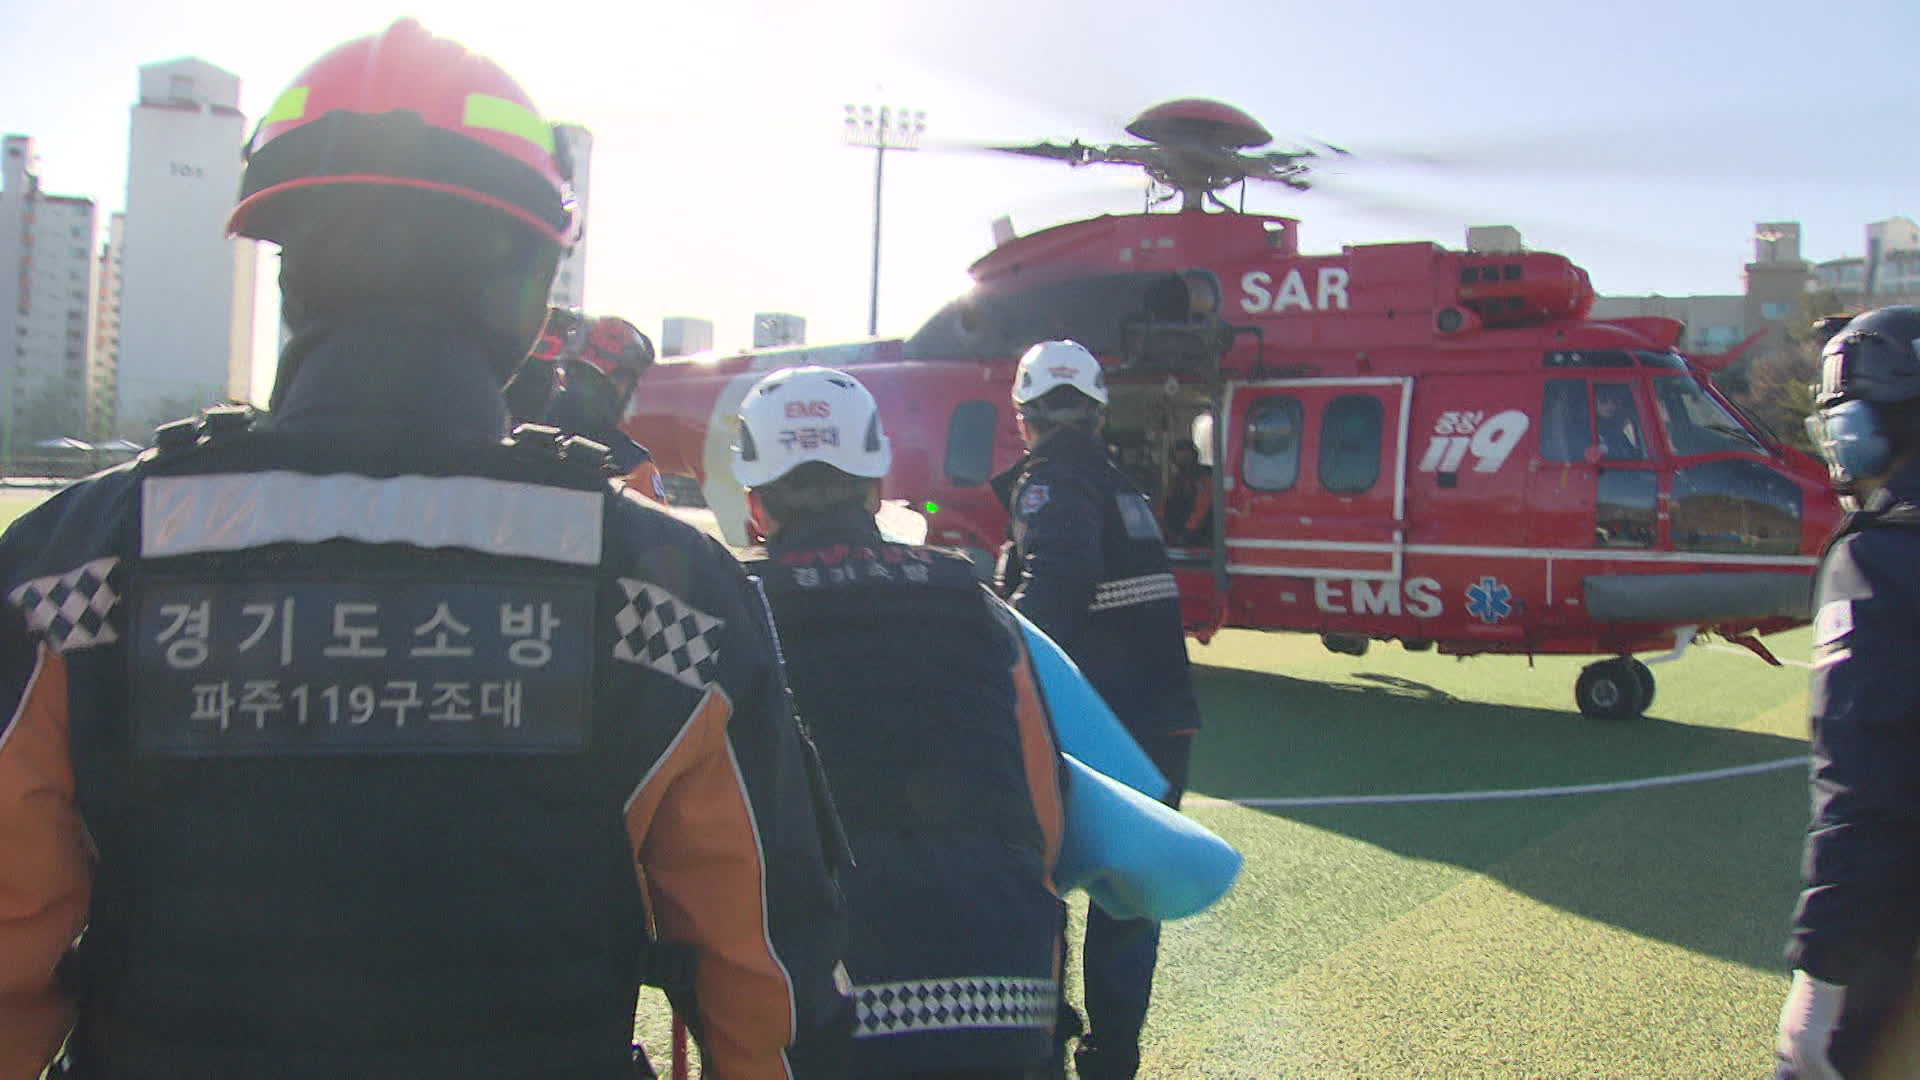 지난 18일, ‘119 응급의료헬기’ 모의 훈련 중인 모습